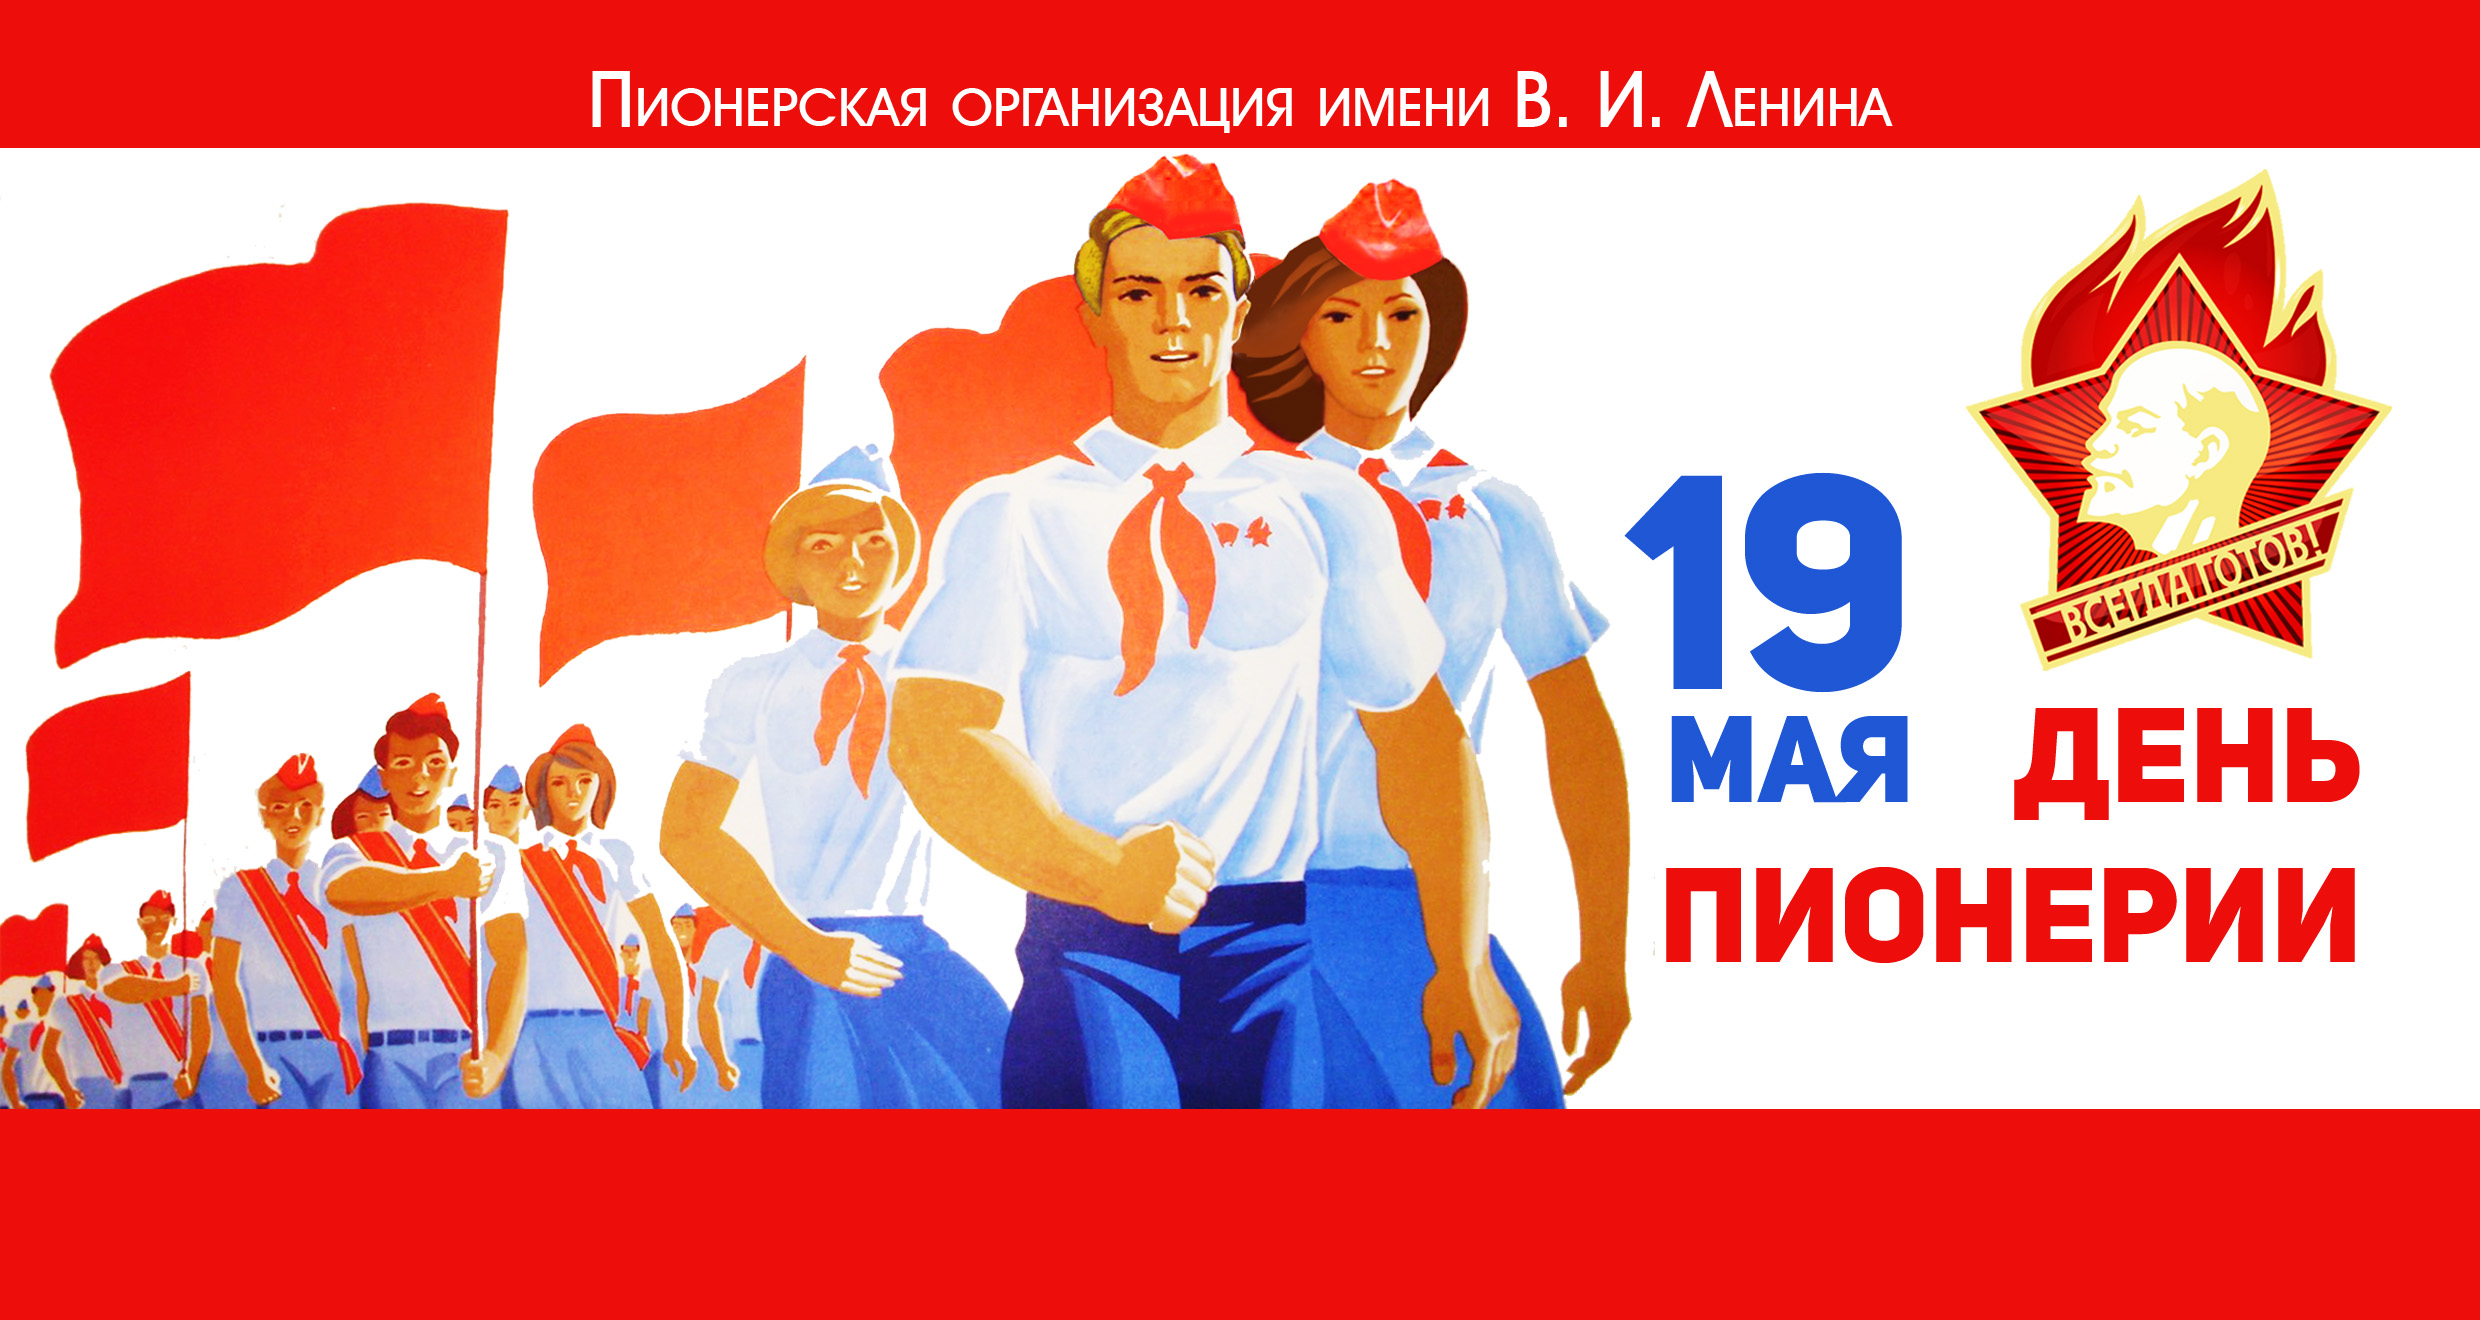 15 мая 16 мая 19 мая. 19 Мая день Пионерской организации. Дата рождения Пионерской организации в СССР. 100 Лет Пионерской организации. День пи.